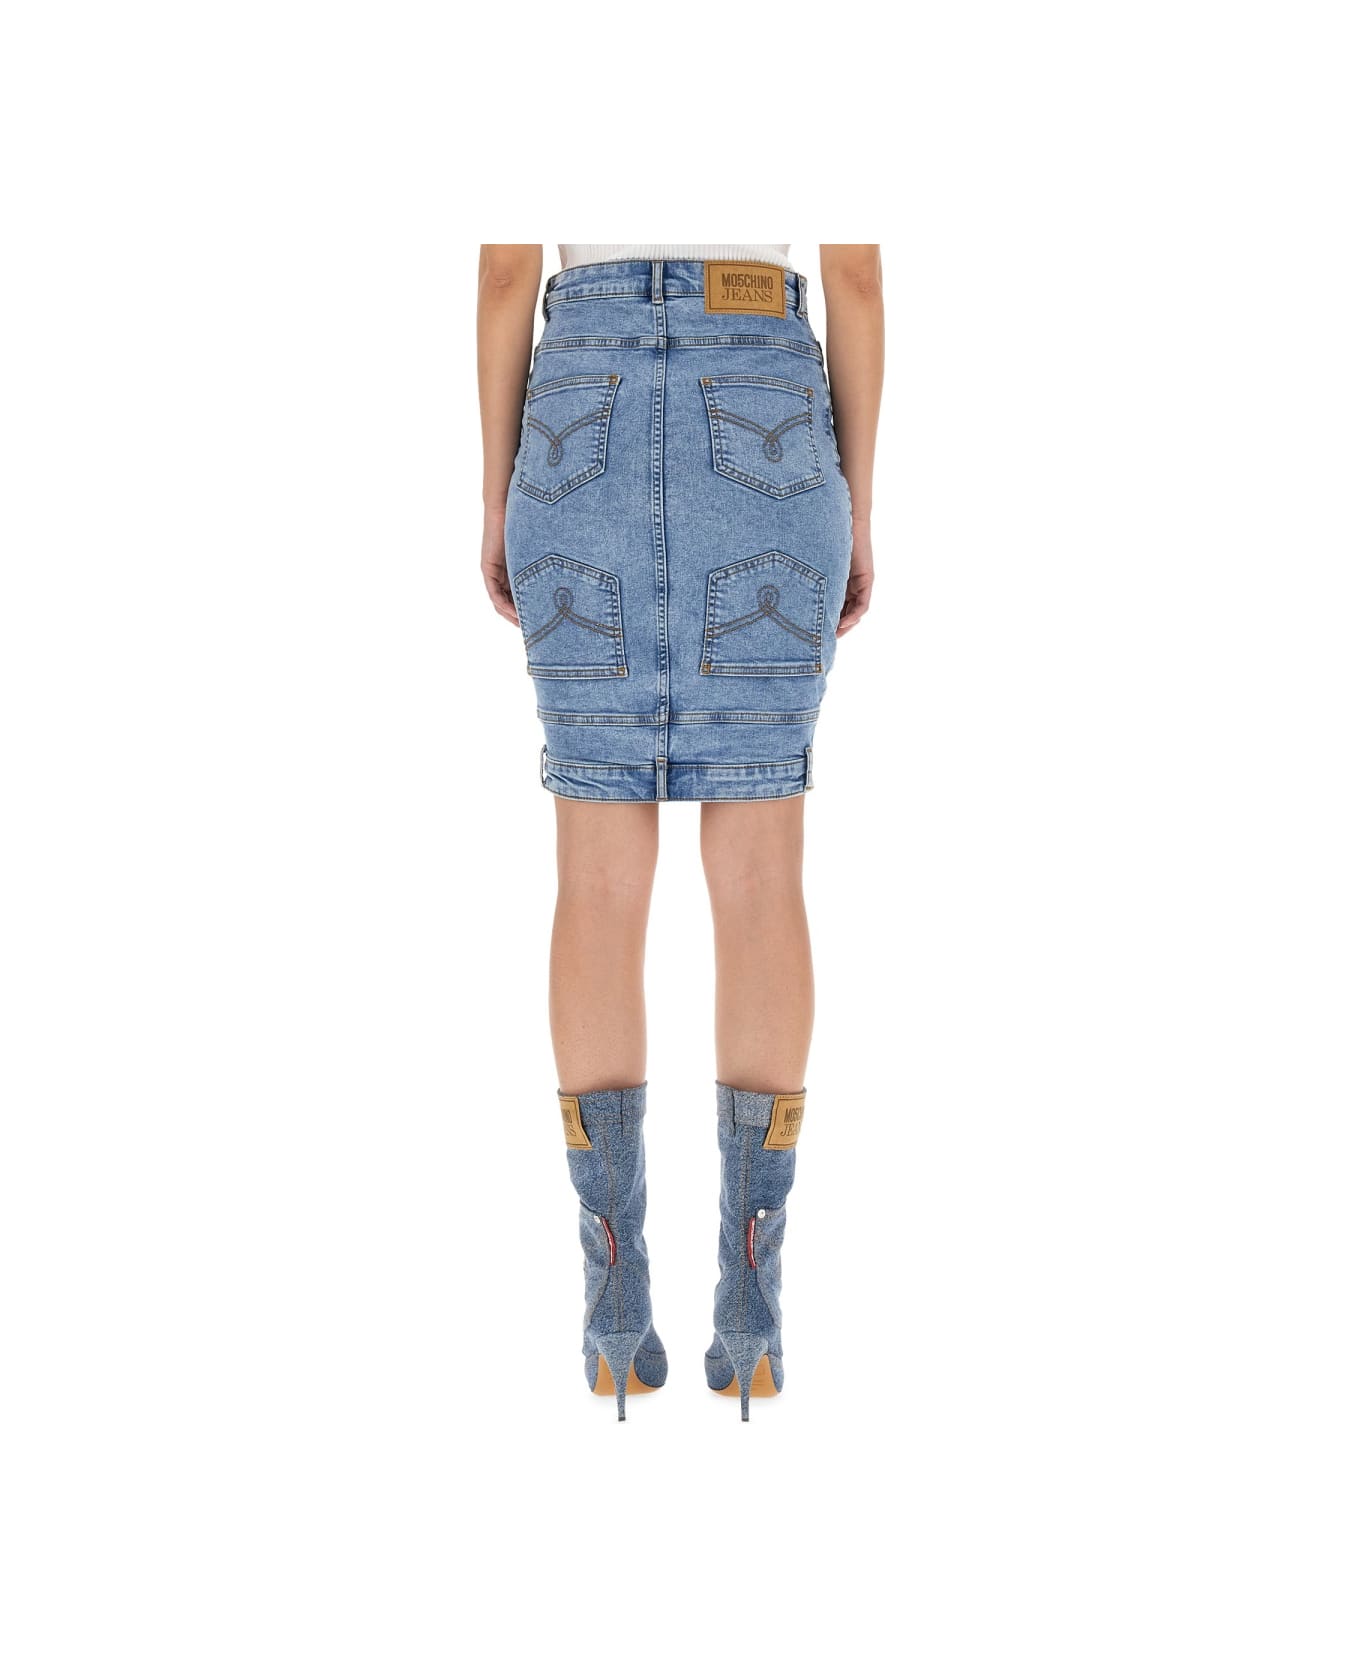 M05CH1N0 Jeans Denim Skirt - BLUE